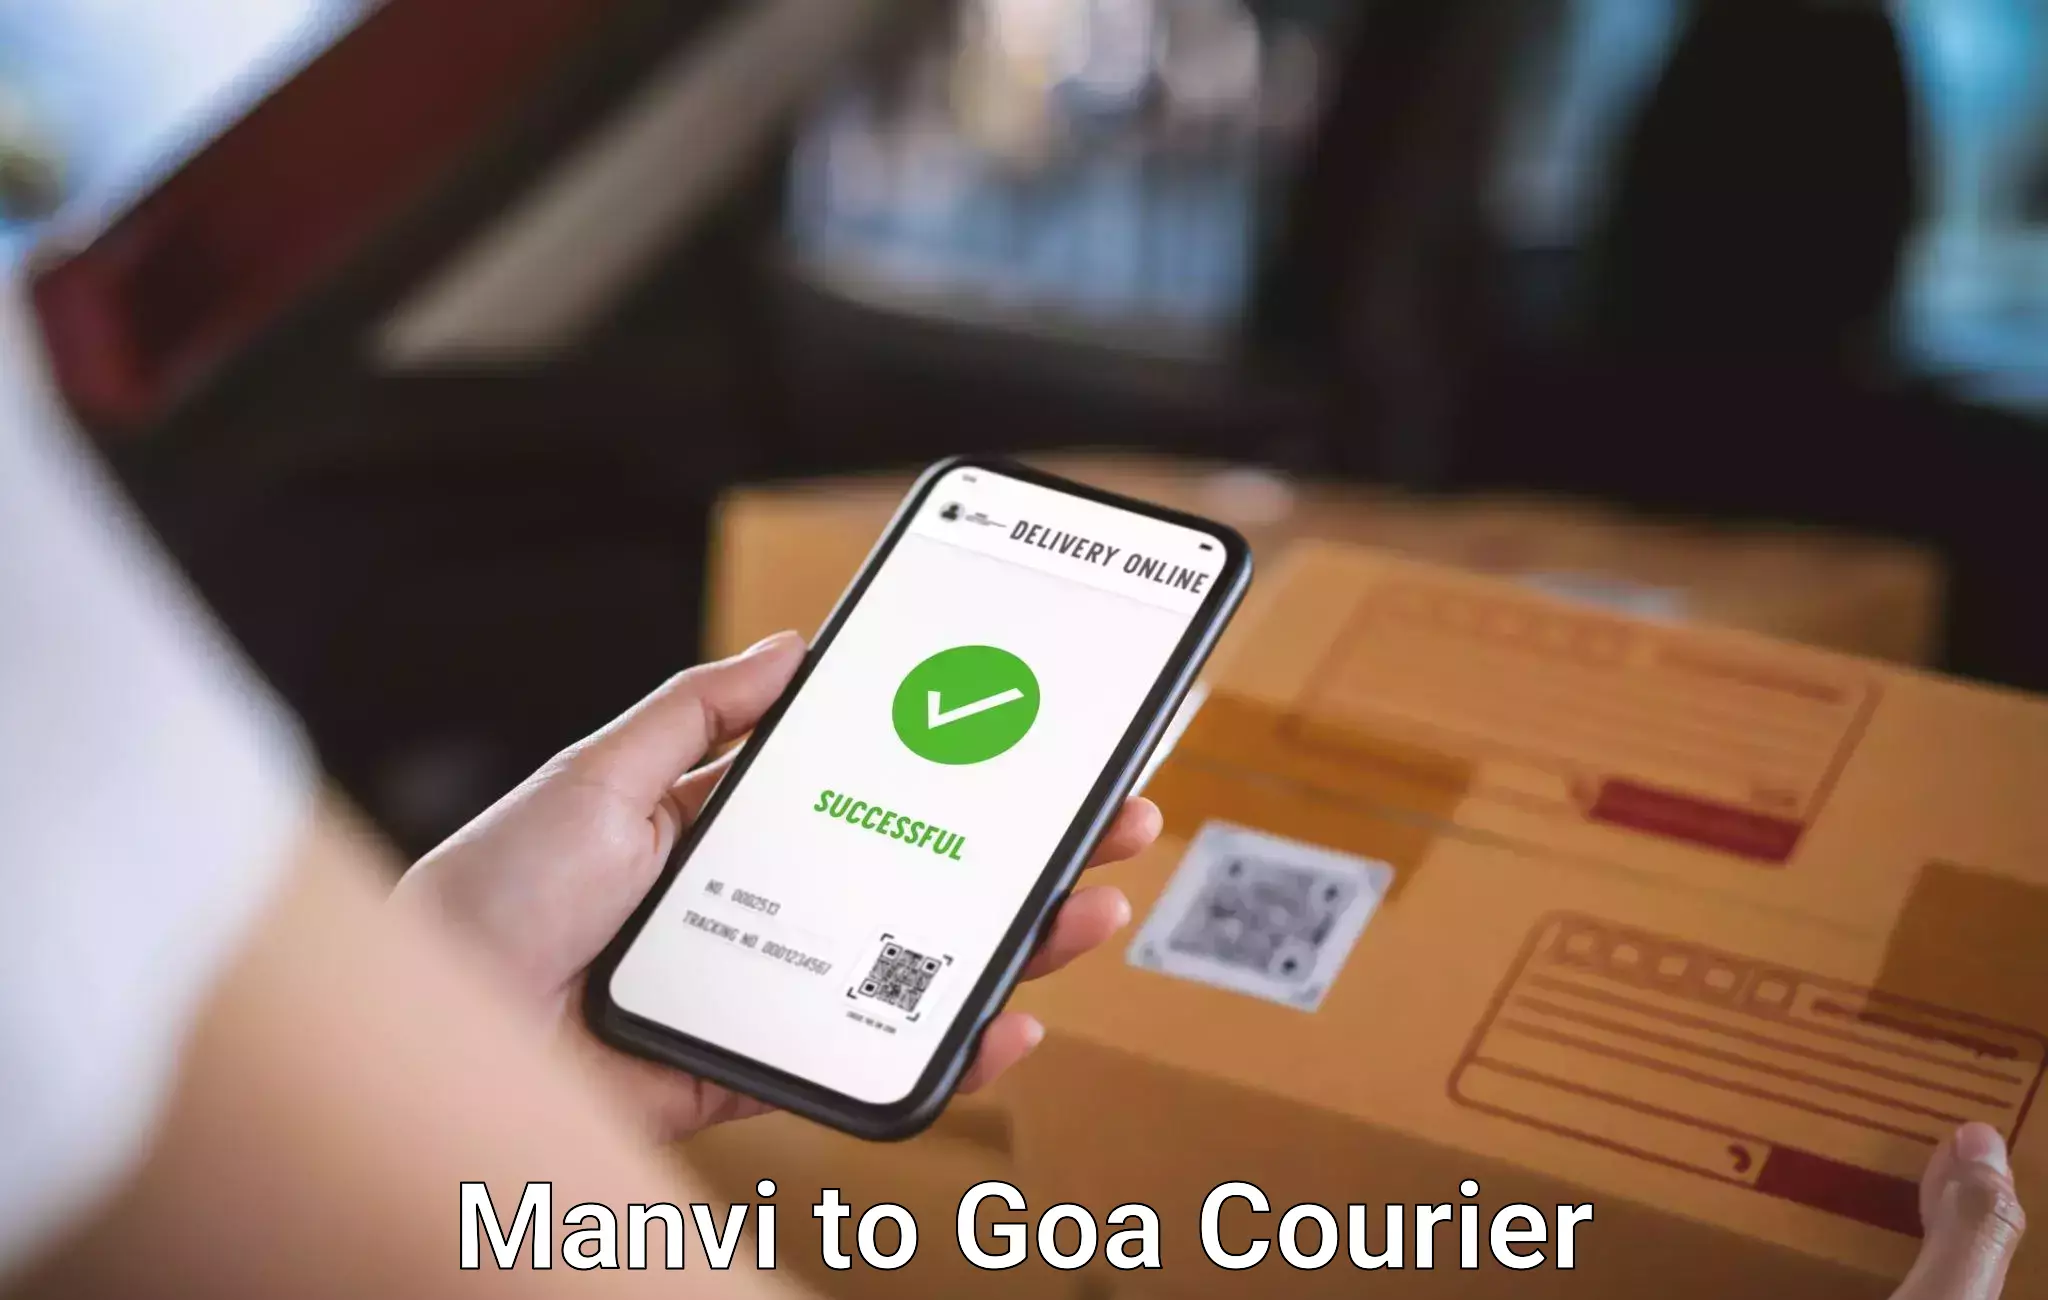 Baggage shipping service Manvi to Goa